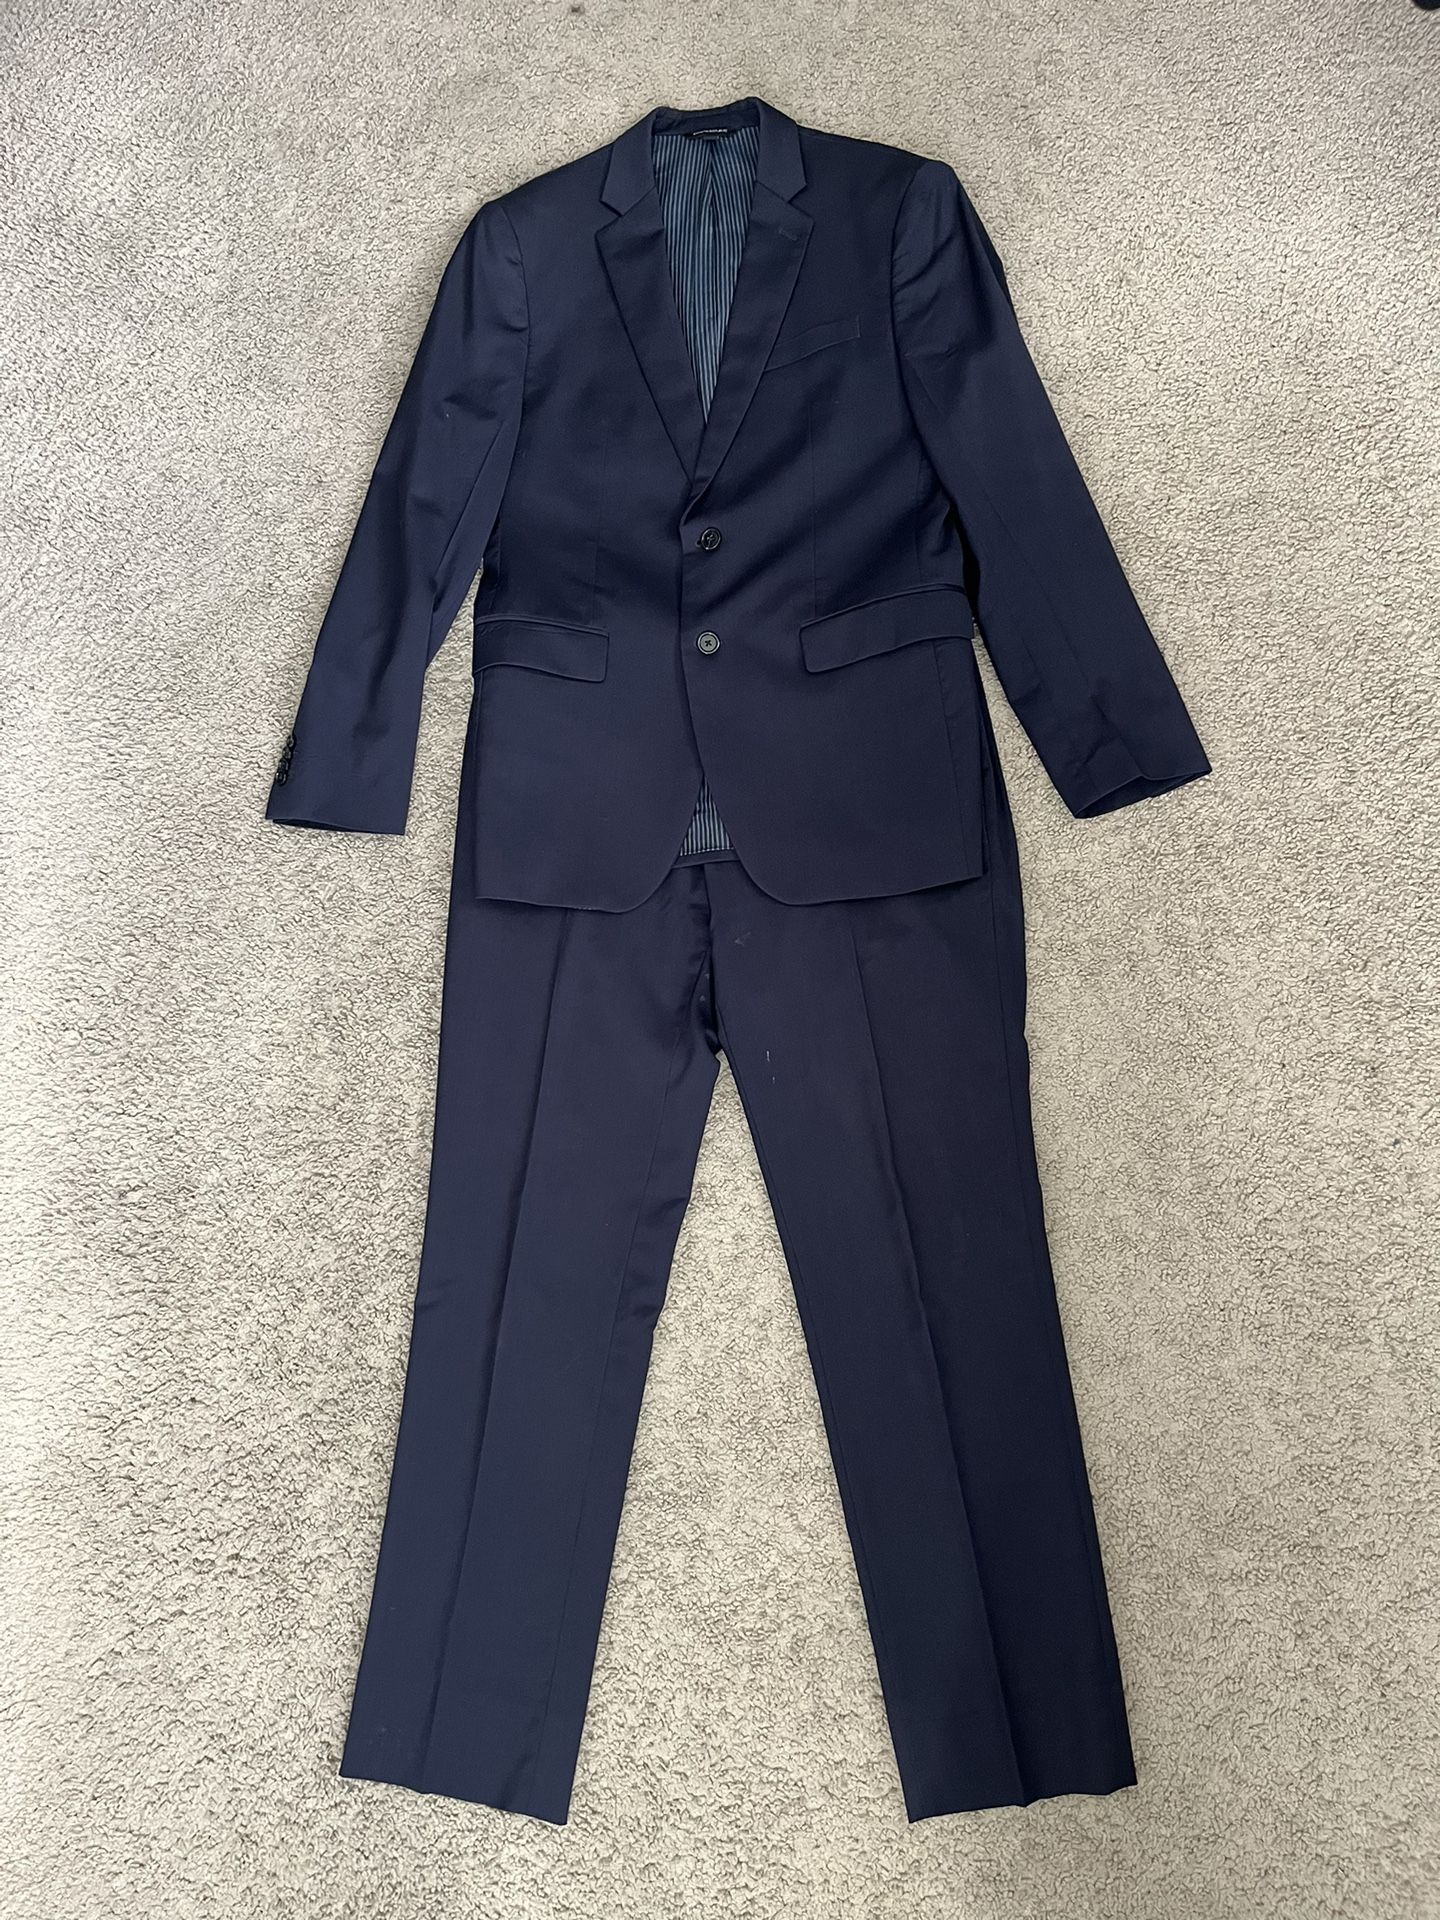 Navy Blue Slim Fit Suit Set, Banana Republic